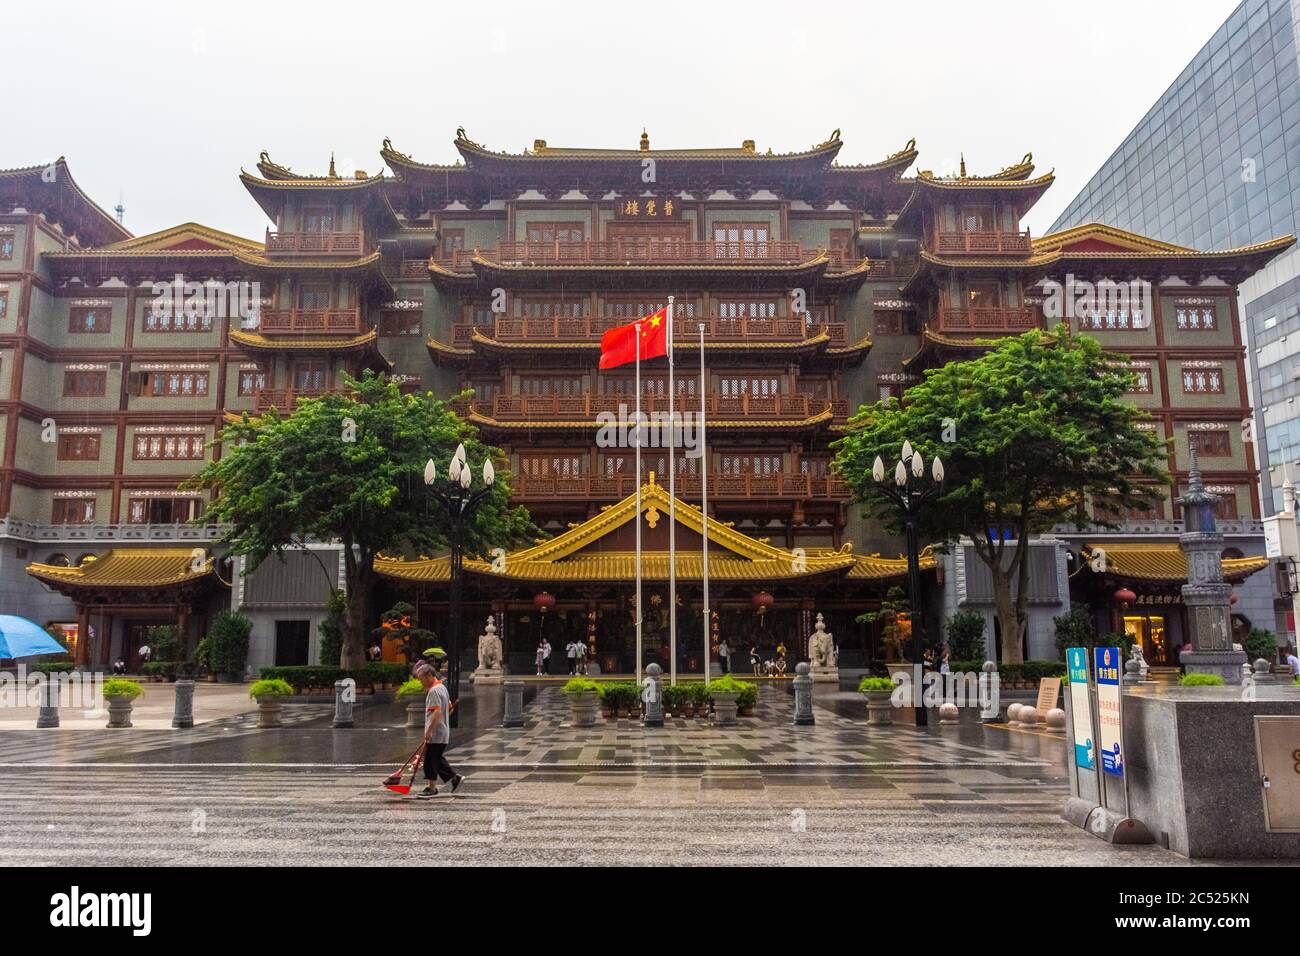 GUANGZHOU, CHINA, 18 NOVEMBER 2019: Big Buddha Temple of Guangzhou Stock Photo